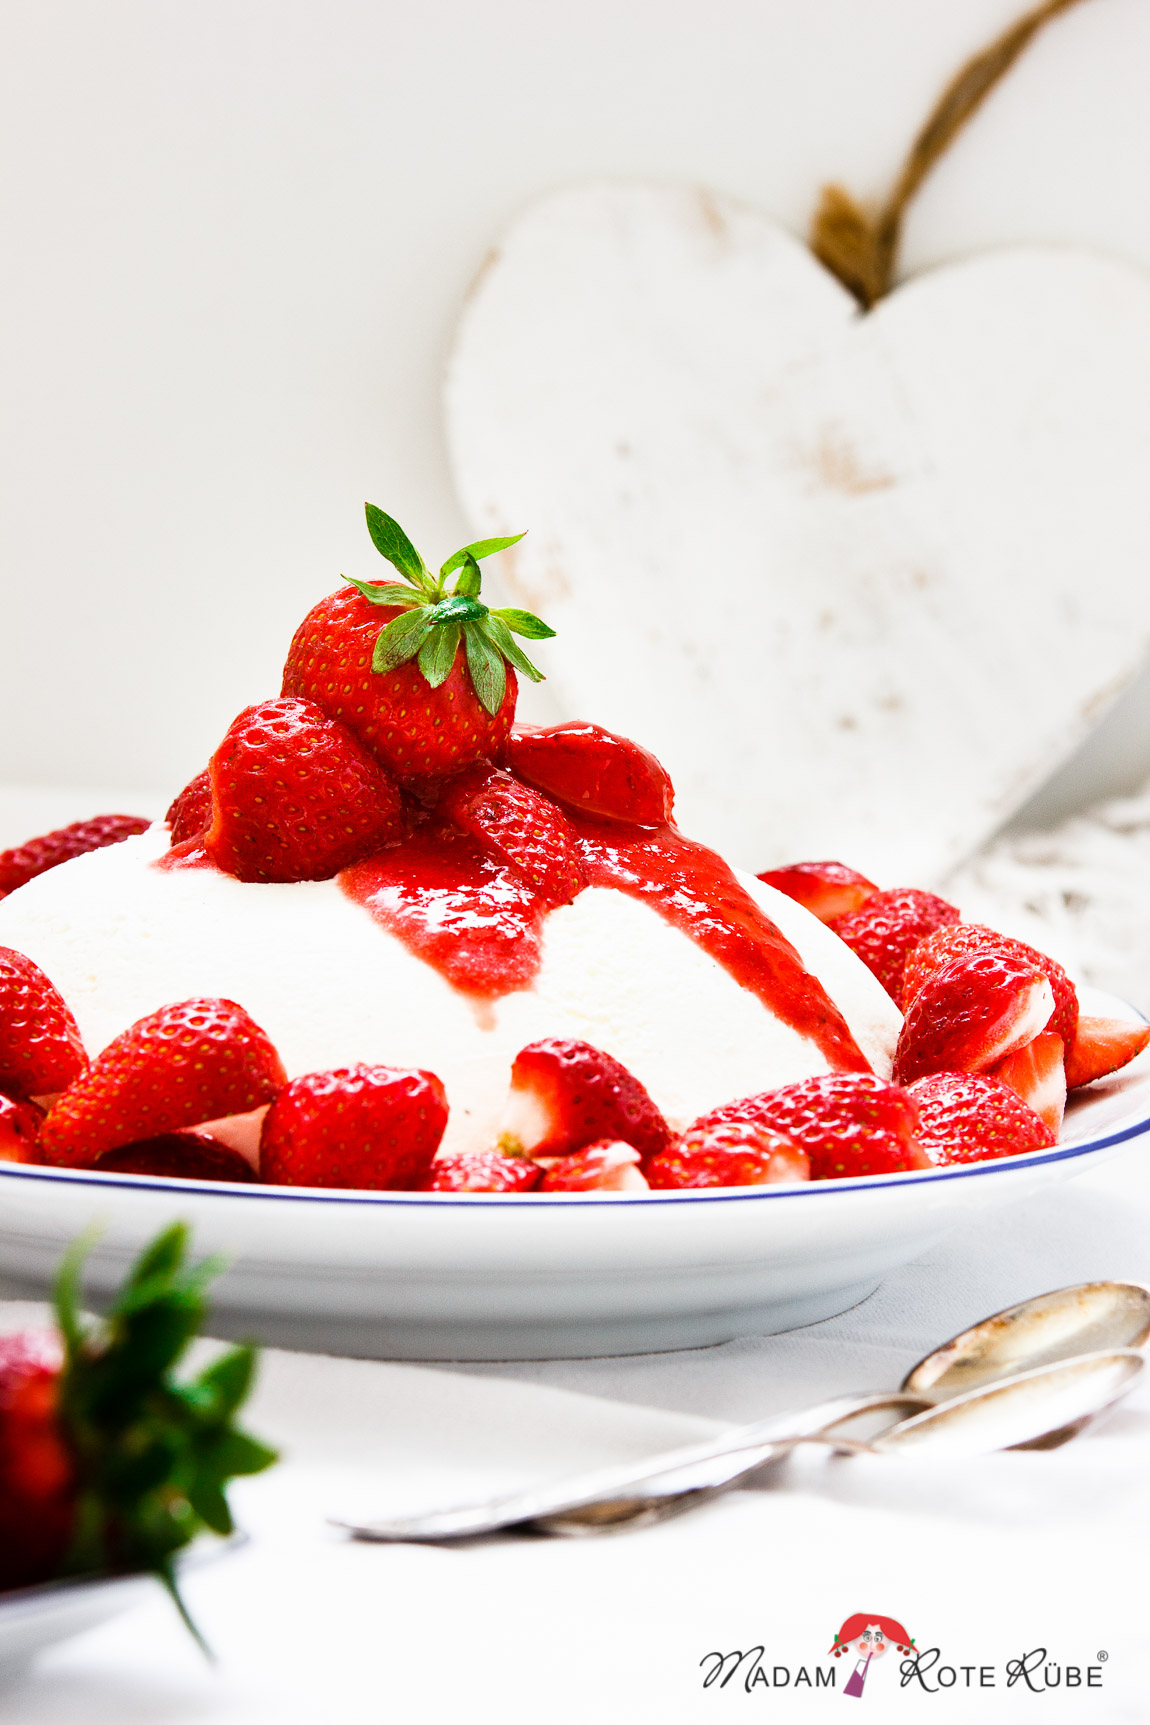 Luftig-leichte Zitronen-Joghurt-Kuppel mit Erdbeeren - Madam Rote Rübe